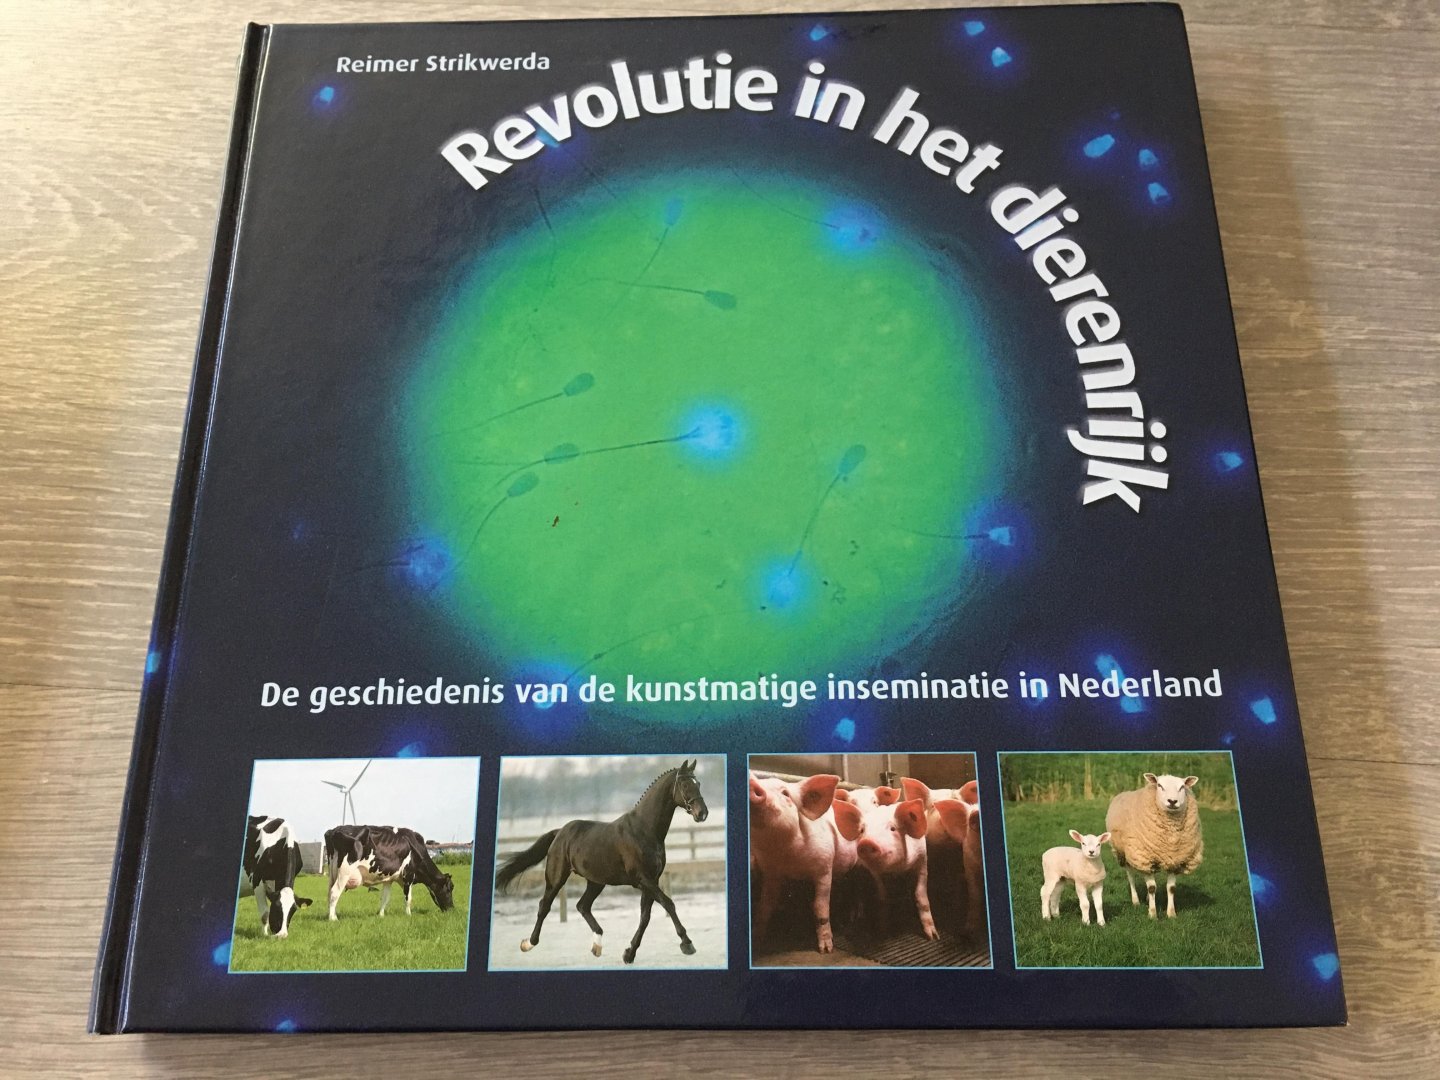 Reimer Strikwerda - Revolutie in het dierenrijk / de geschiedenis van de kunstmatige inseminatie in Nederland